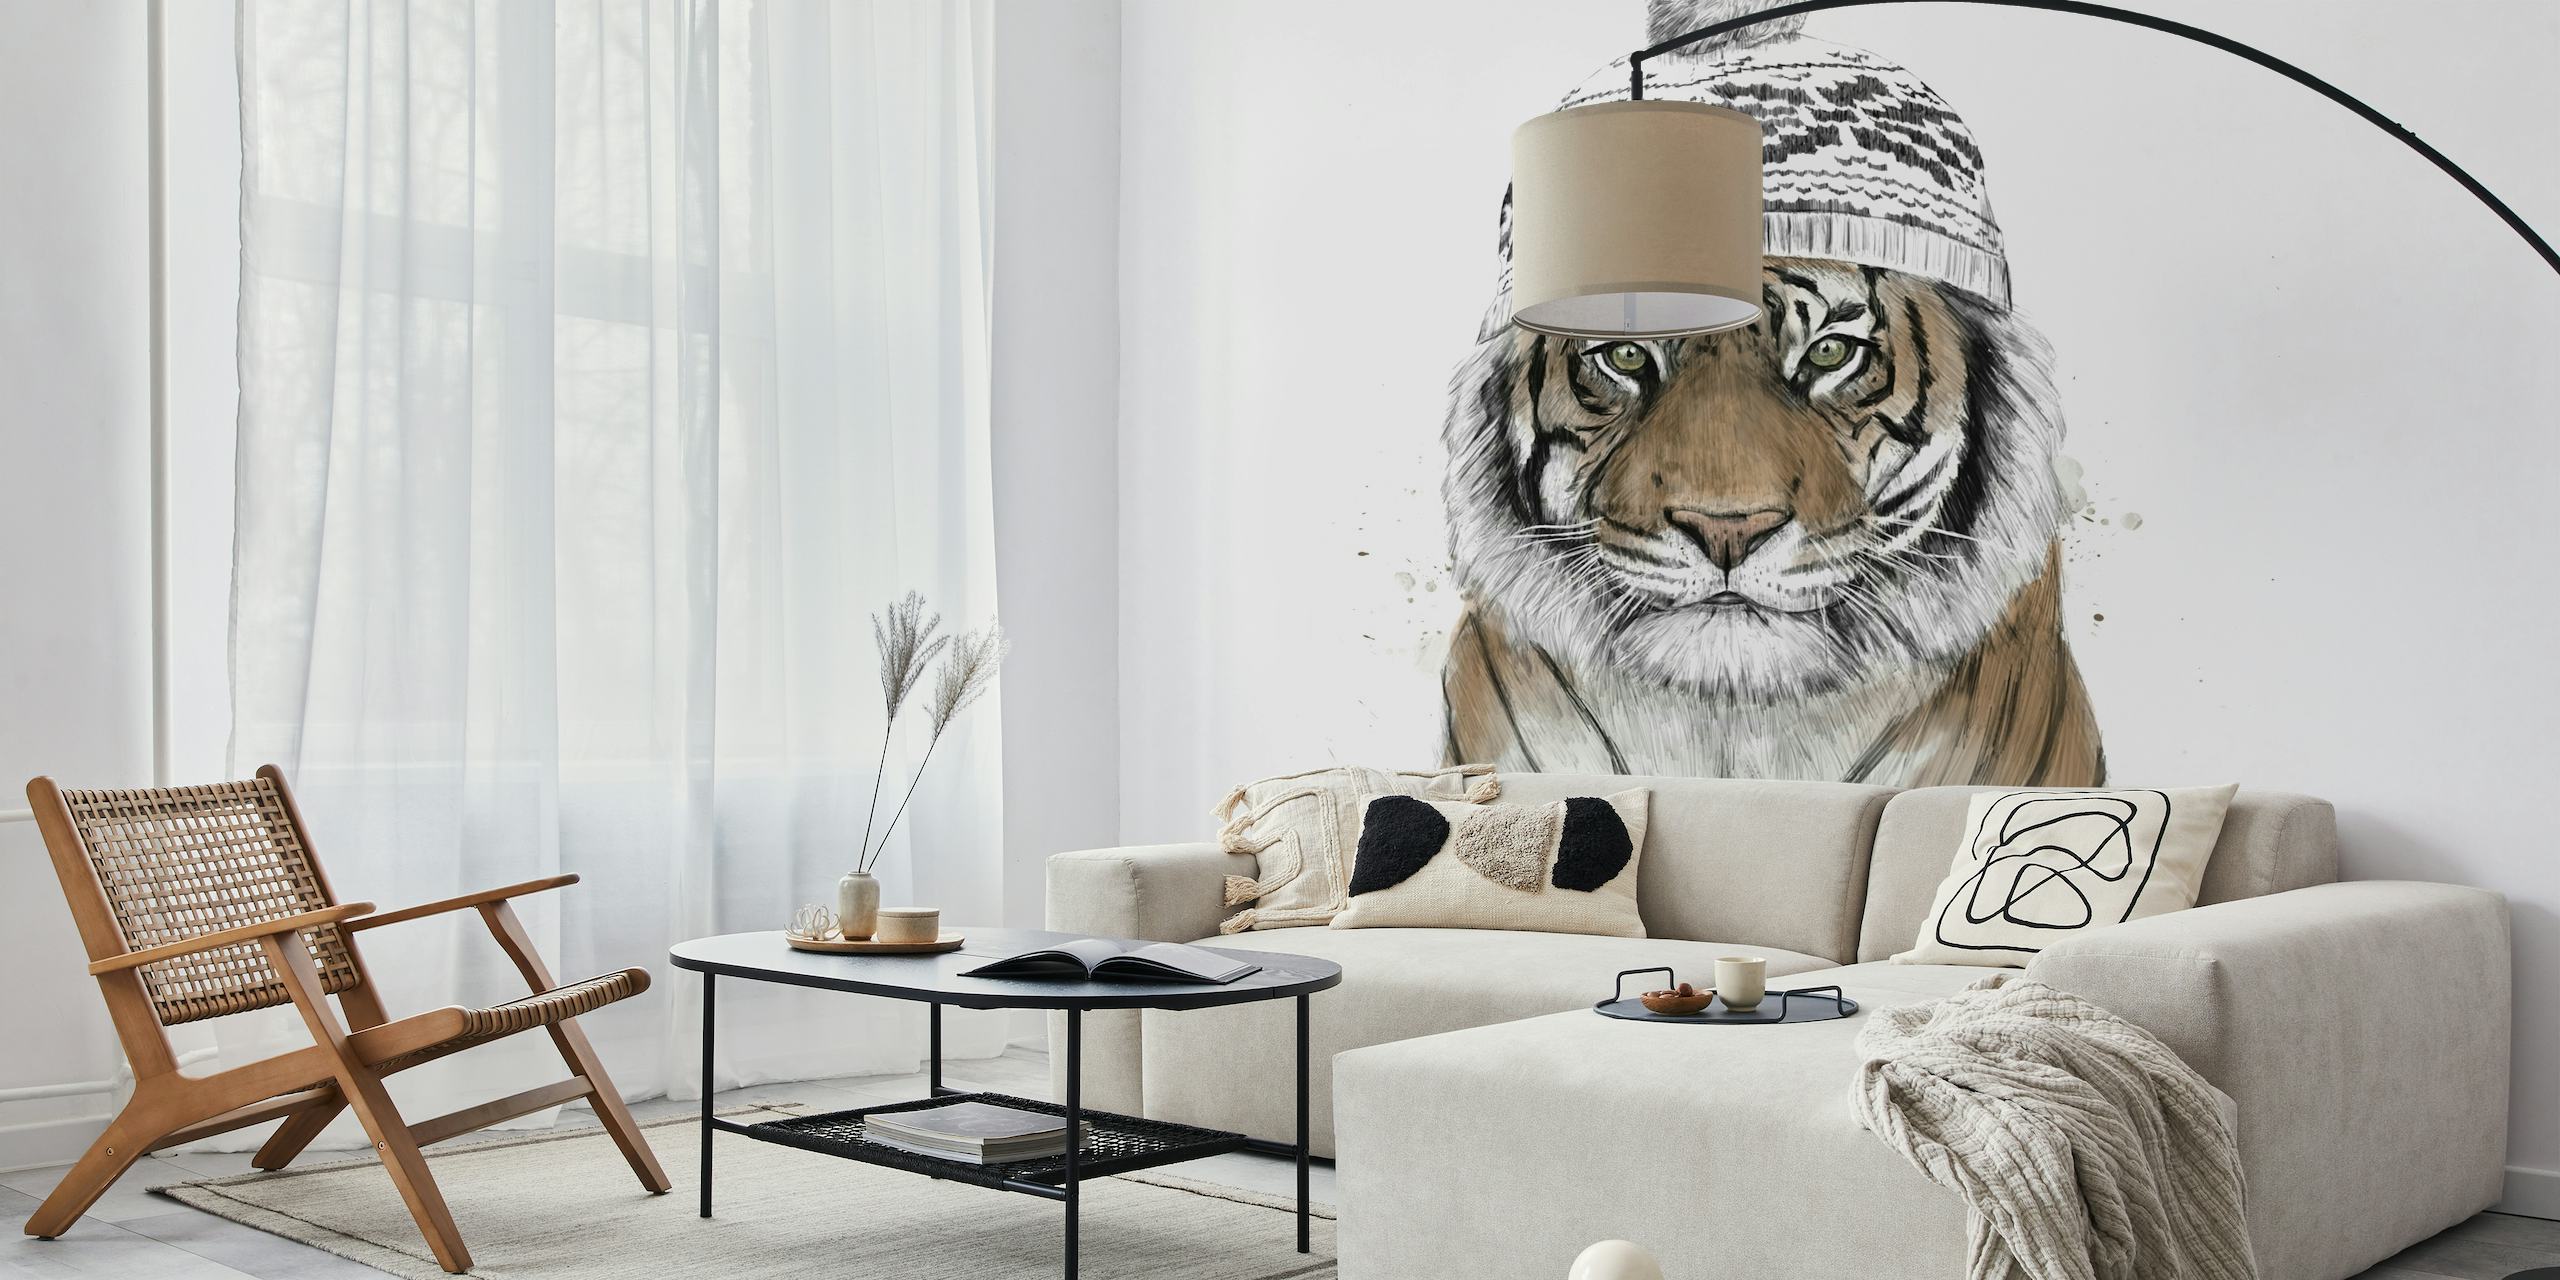 Zidna slika sibirskog tigra s detaljnom ilustracijom lica tigra na bijeloj pozadini